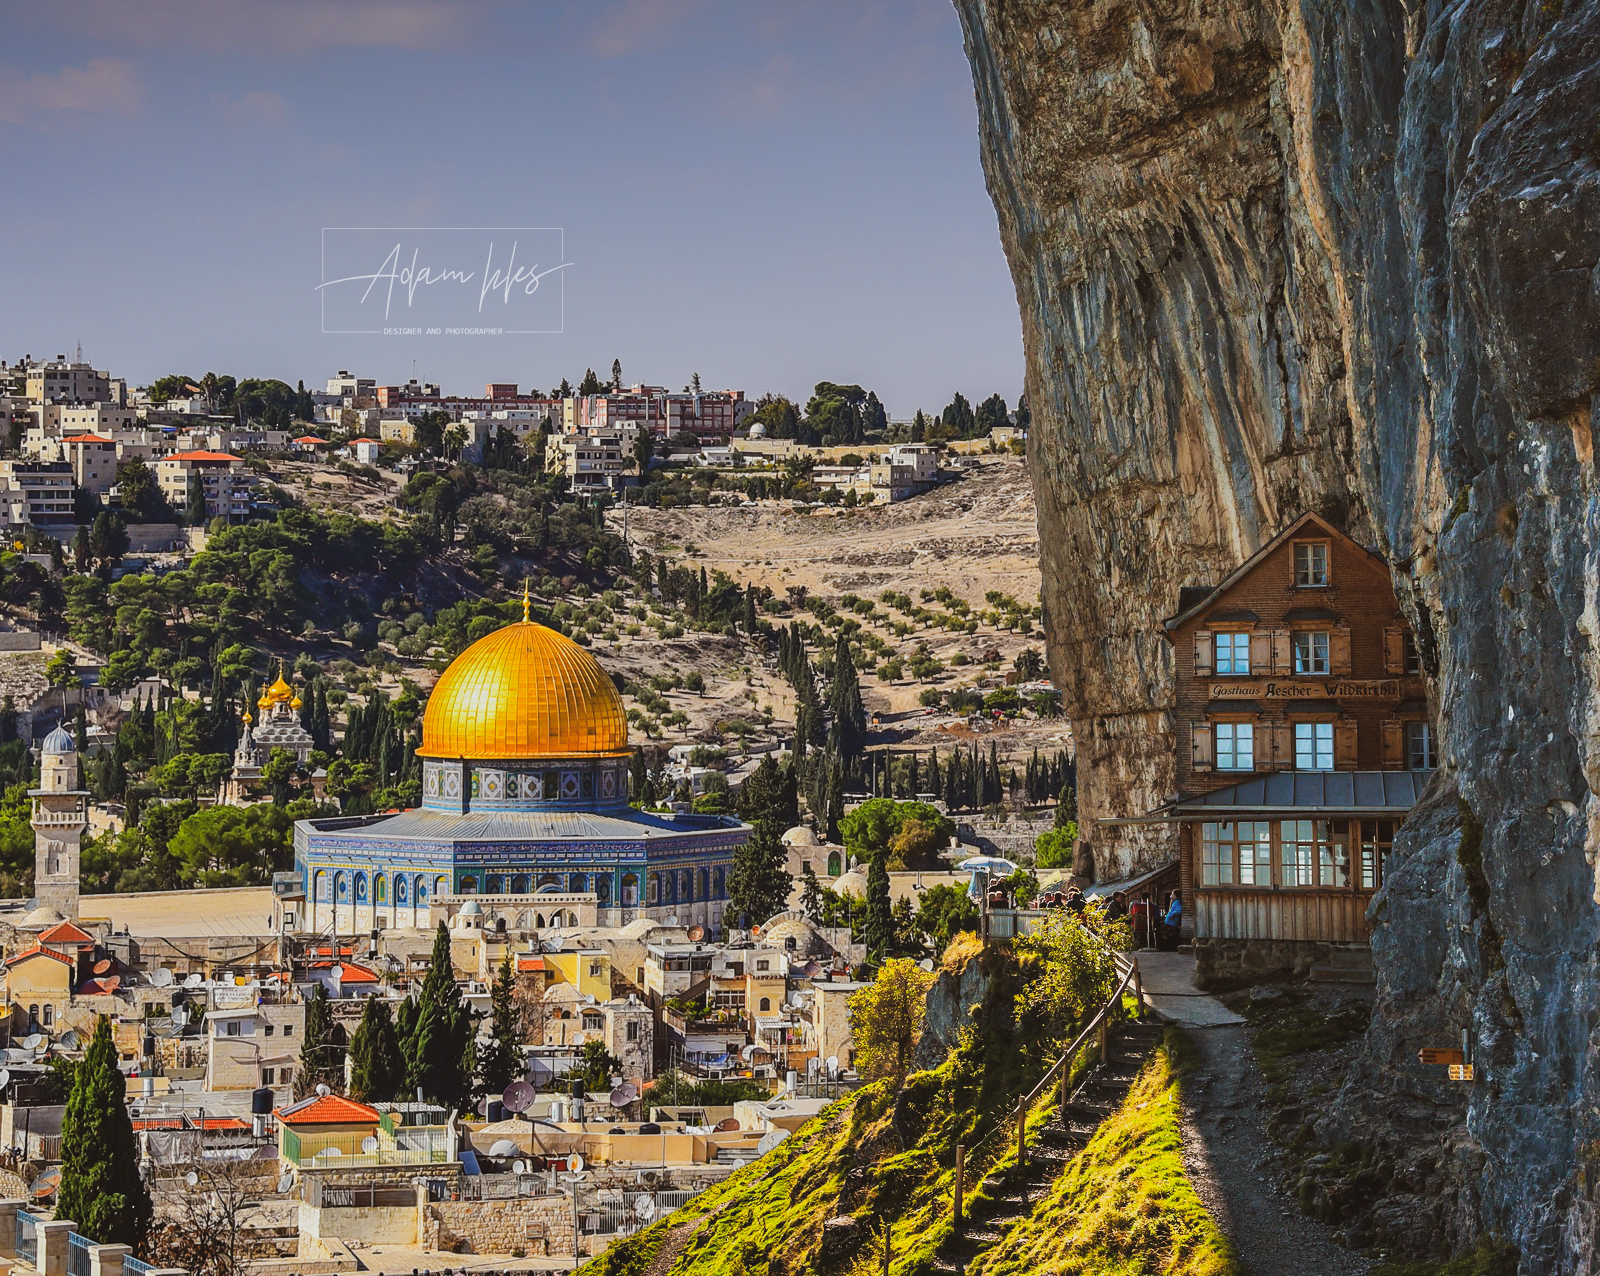 خلفية رائعة من اجمل خلفيات القدس - صور القدس بدقة عالية قبة الصخرة